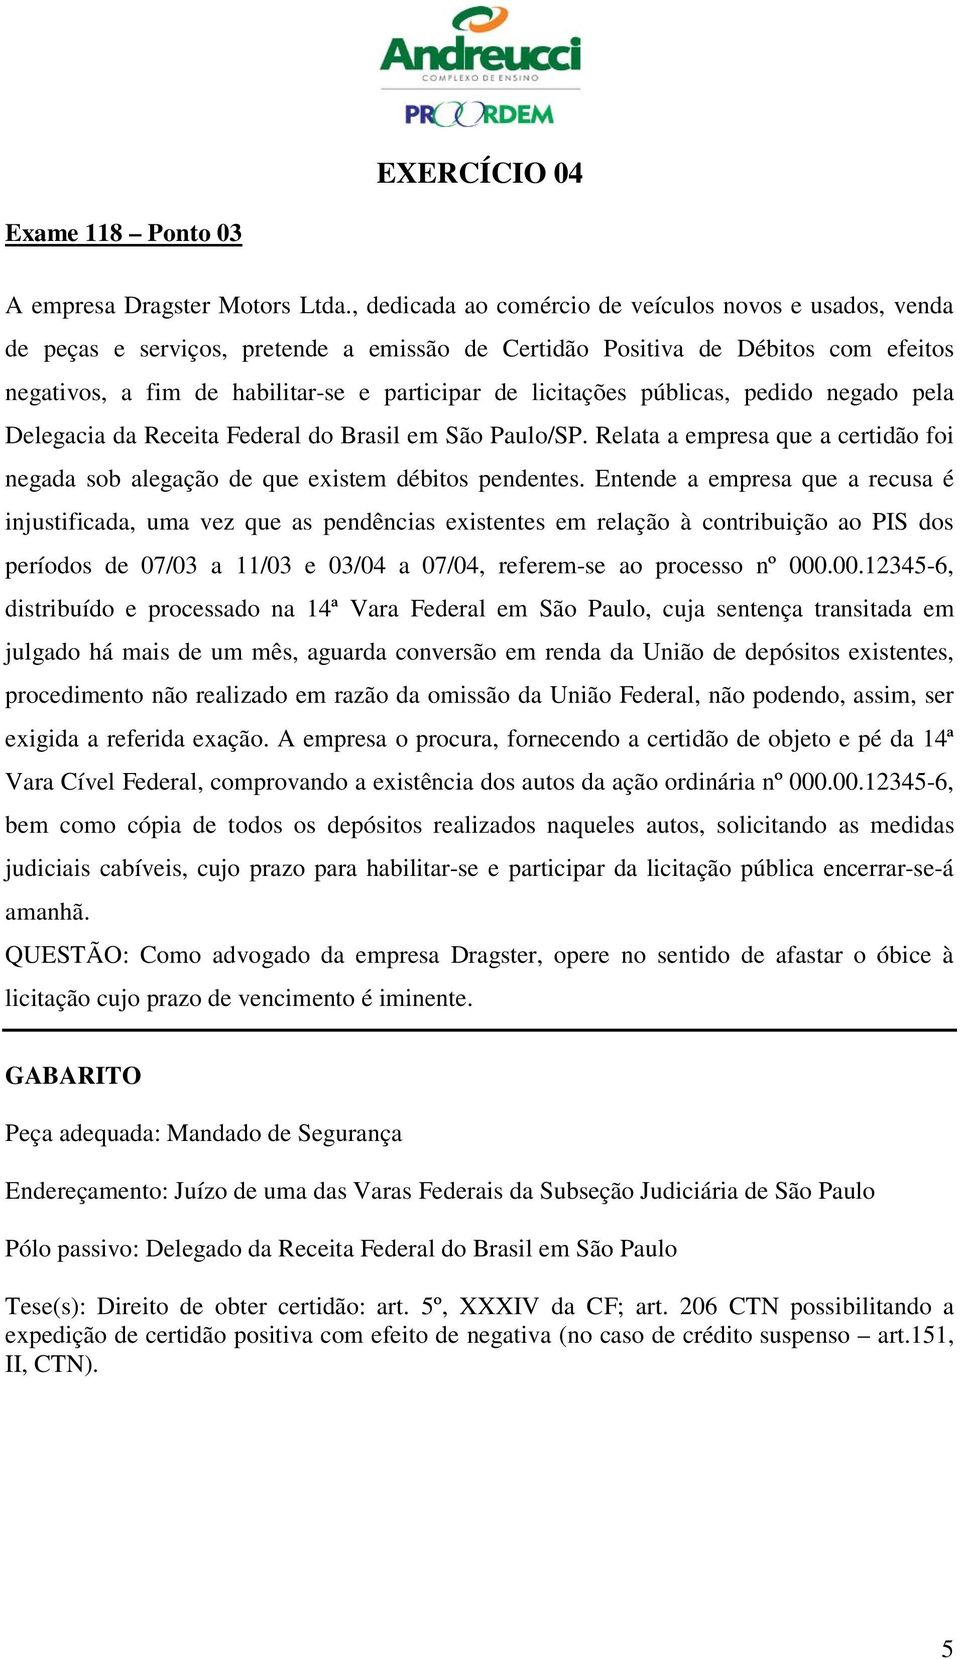 licitações públicas, pedido negado pela Delegacia da Receita Federal do Brasil em São Paulo/SP. Relata a empresa que a certidão foi negada sob alegação de que existem débitos pendentes.